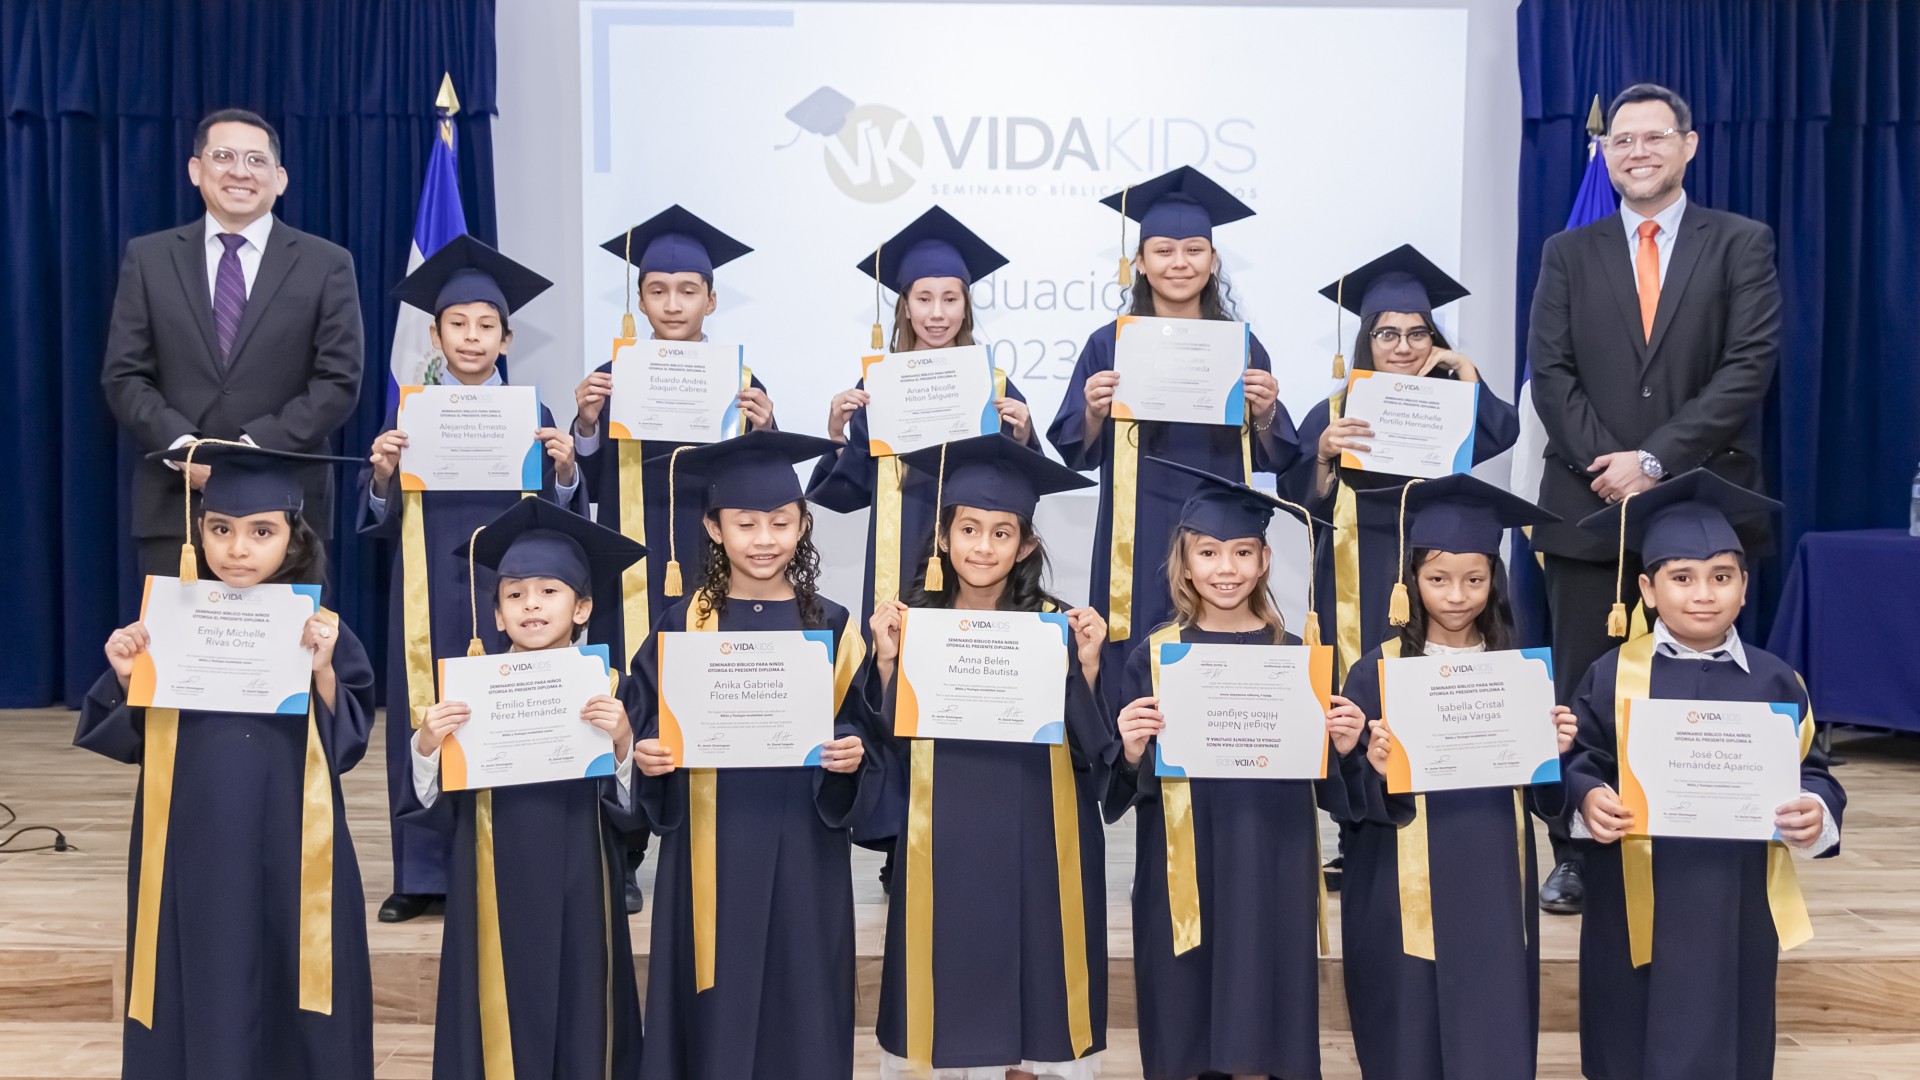 Artículo | Clausura y Graduación de Vida Kids